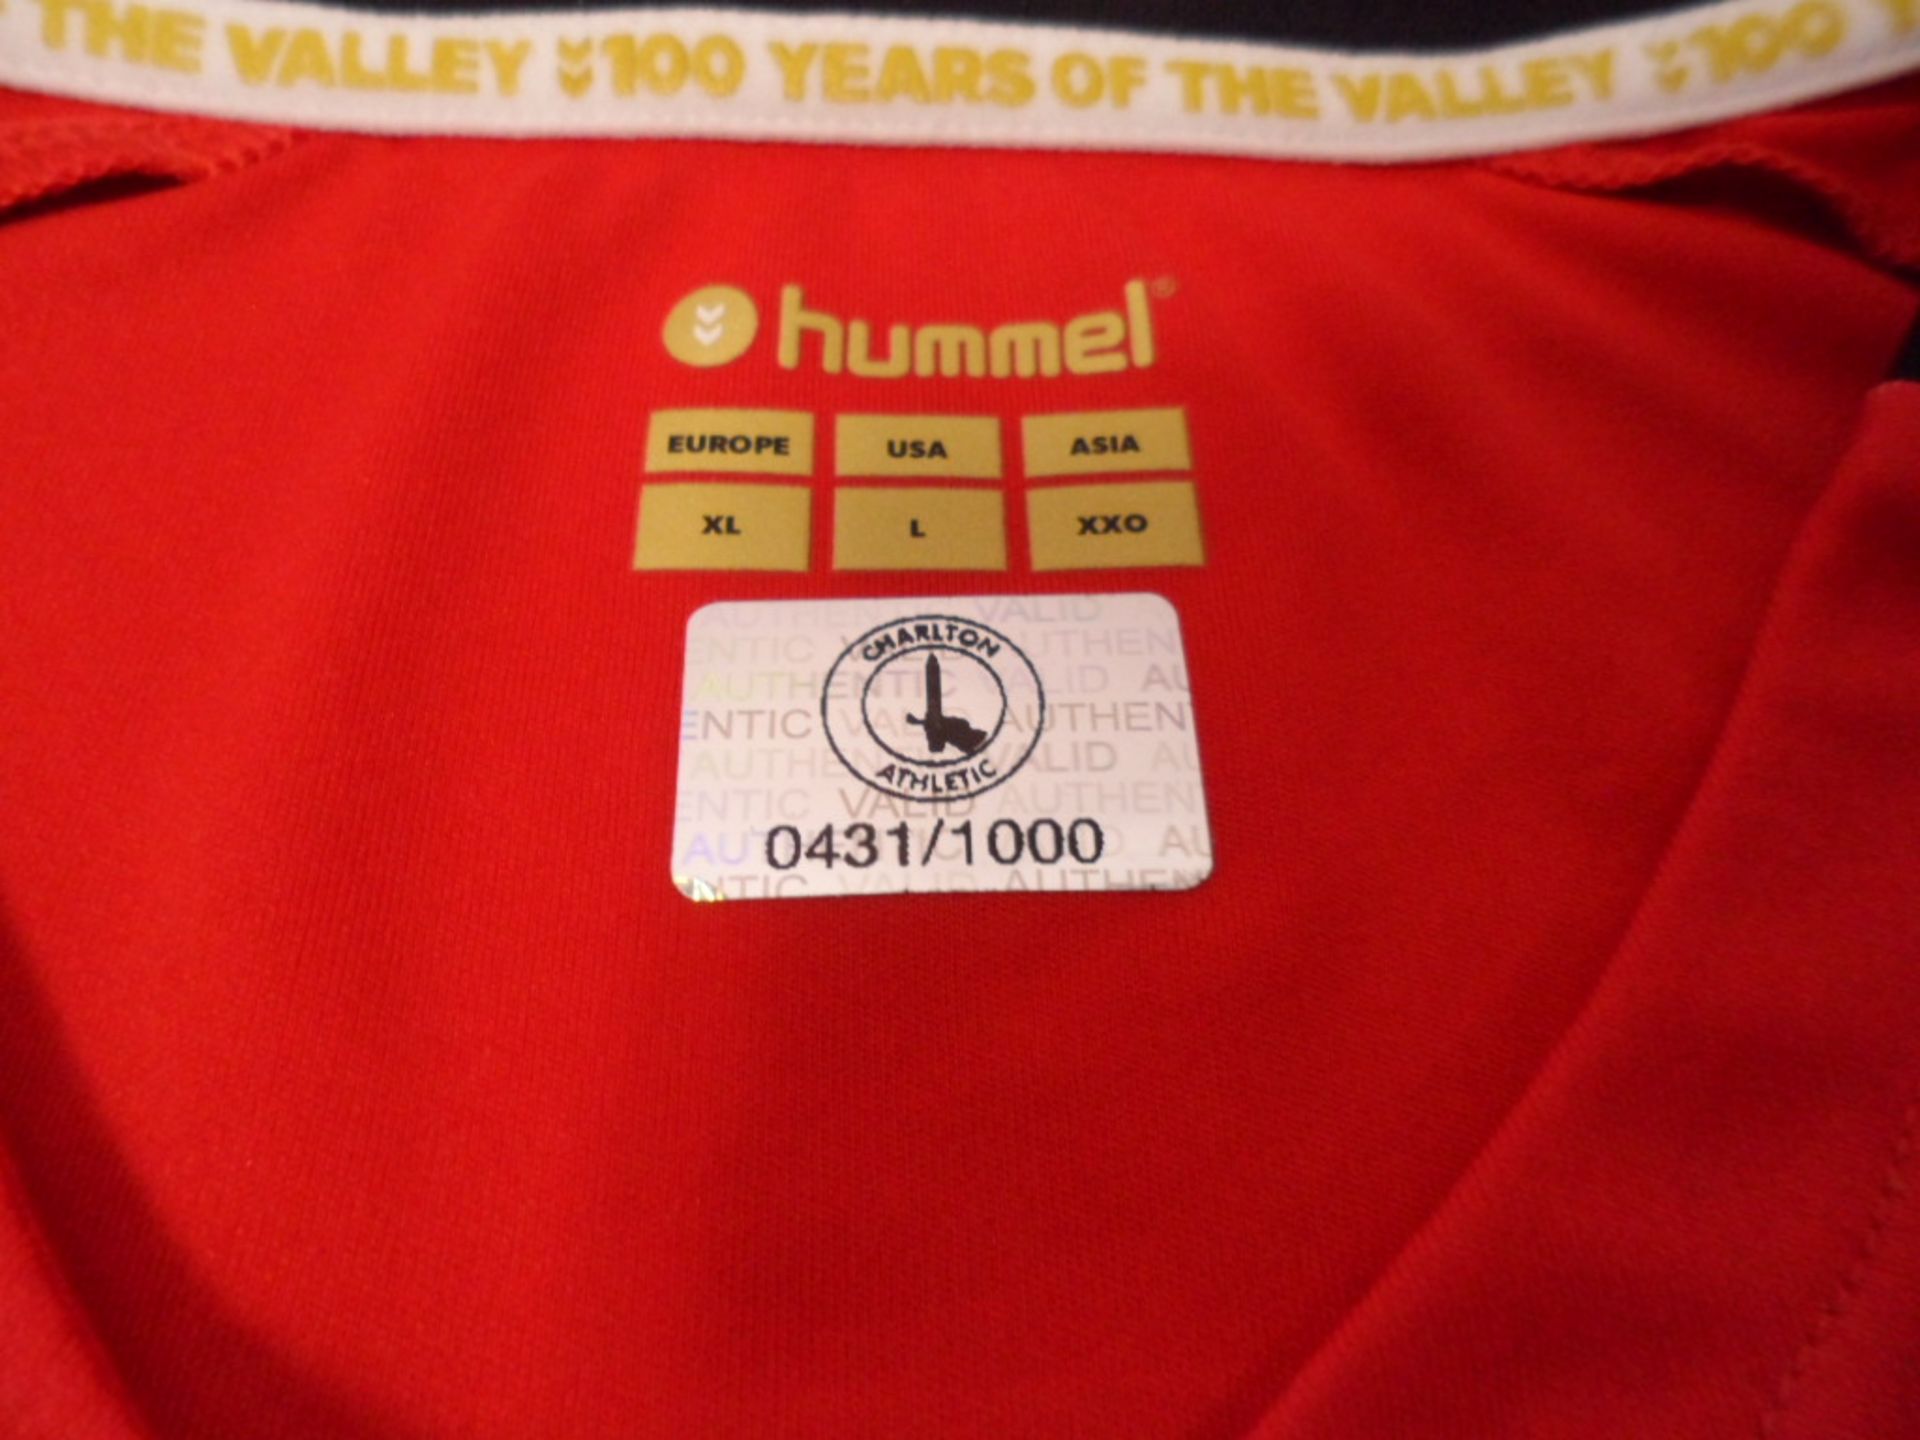 Charlton athletic Hummel 19/20 season shirt bearing signatures (unverified) - Image 2 of 3